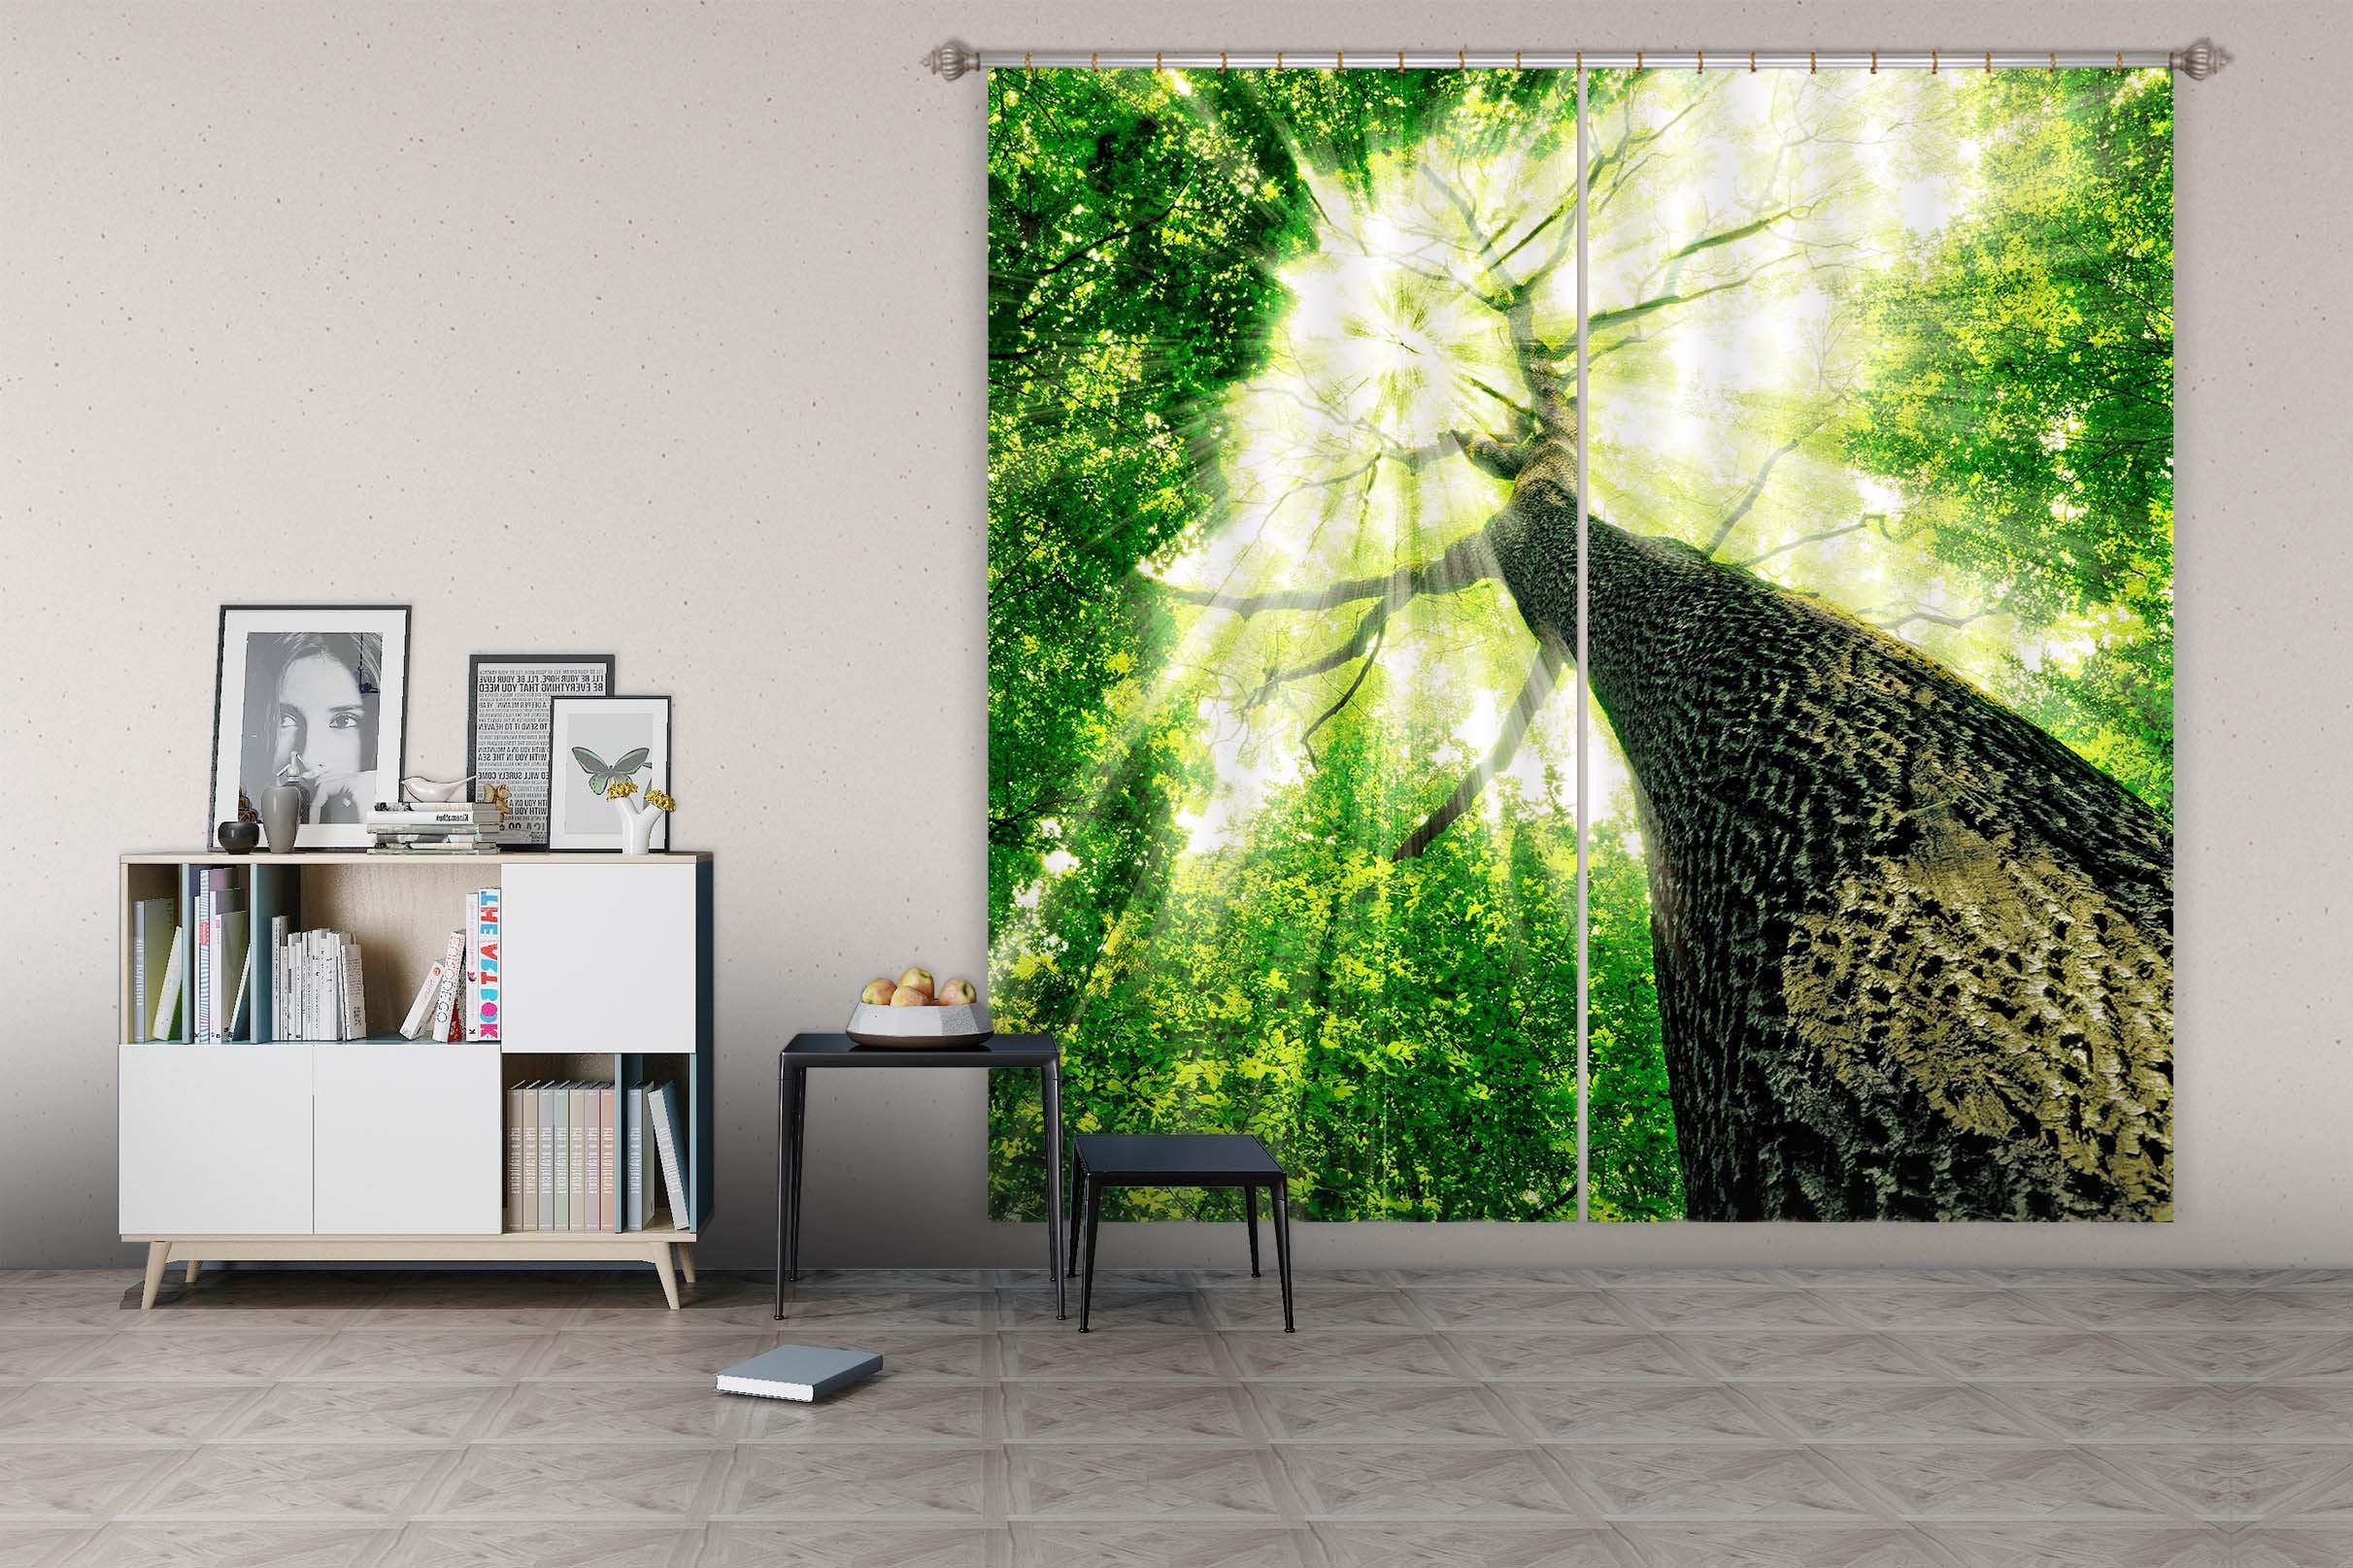 3D Big Tree 848 Curtains Drapes Wallpaper AJ Wallpaper 